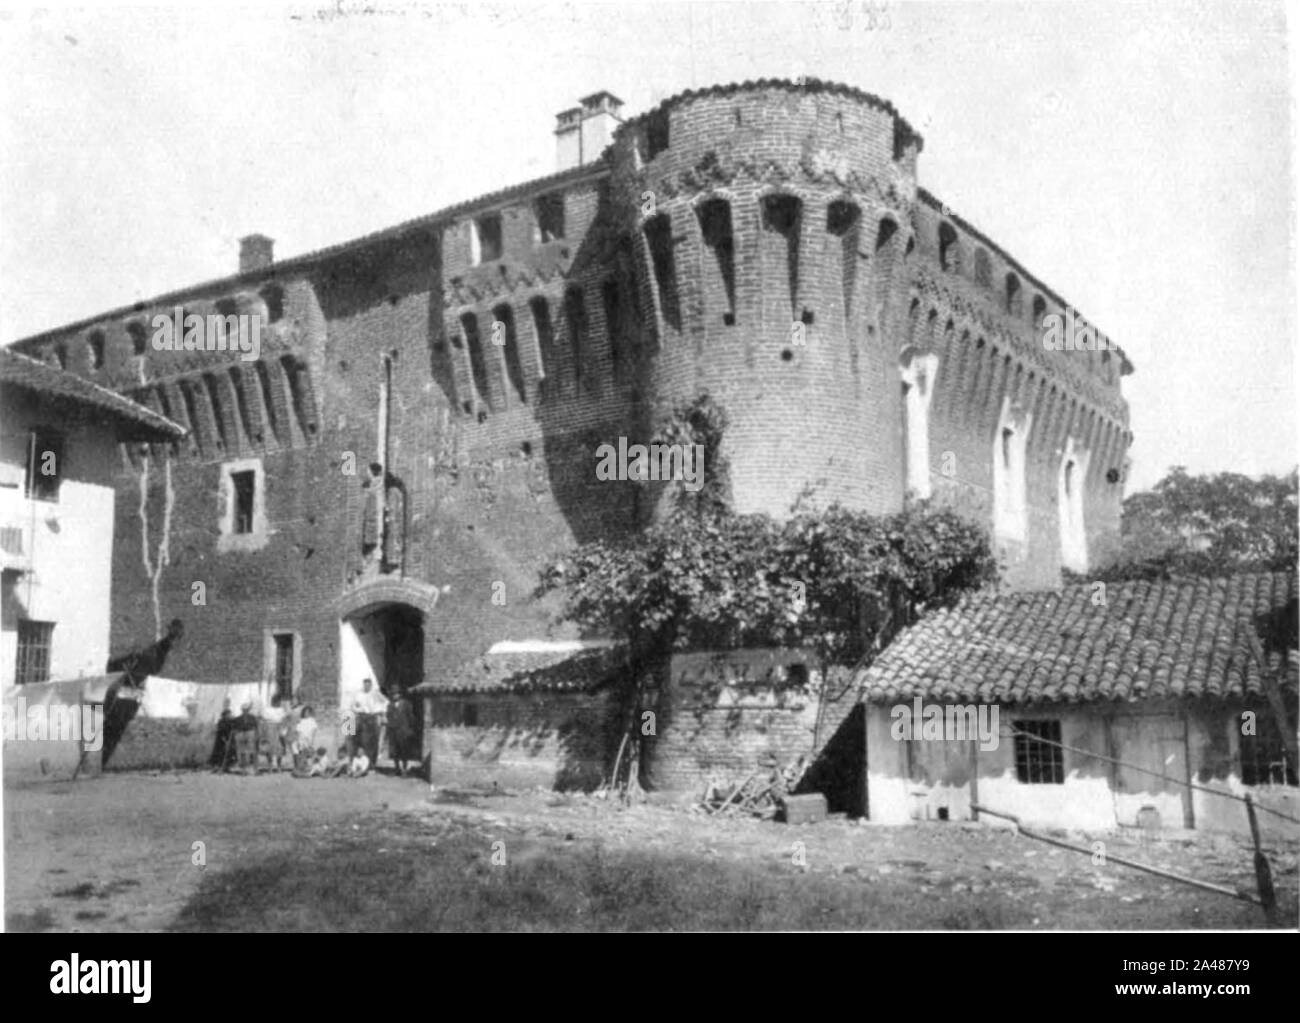 Fig 110, castello di proh, angolo sud ovest, p198, foto nigra, nigra il novarese. Stock Photo